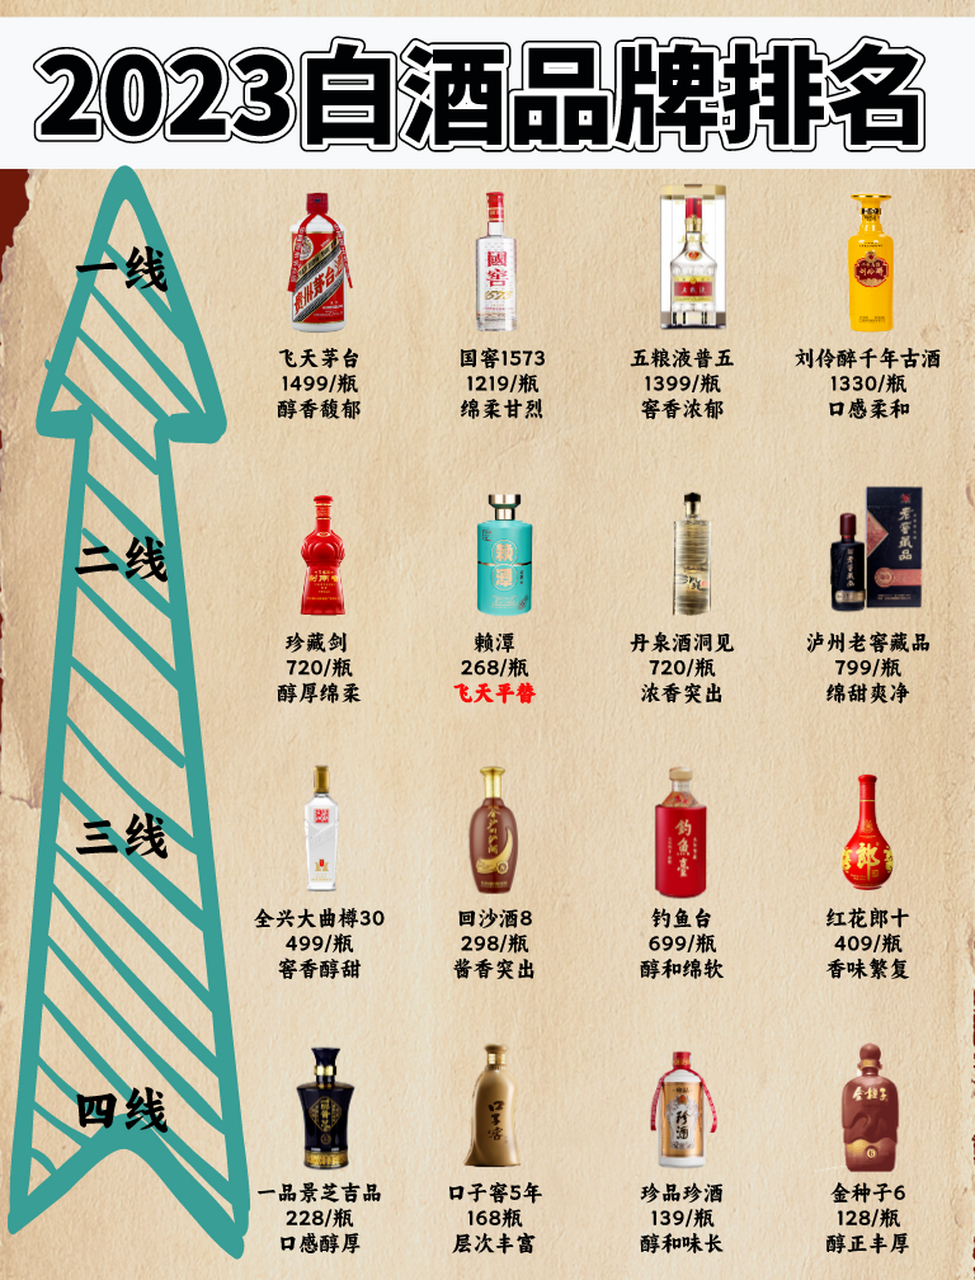 【一线】  飞天茅台:中国国酒,白酒领头人物 国窖1573:回口甘甜